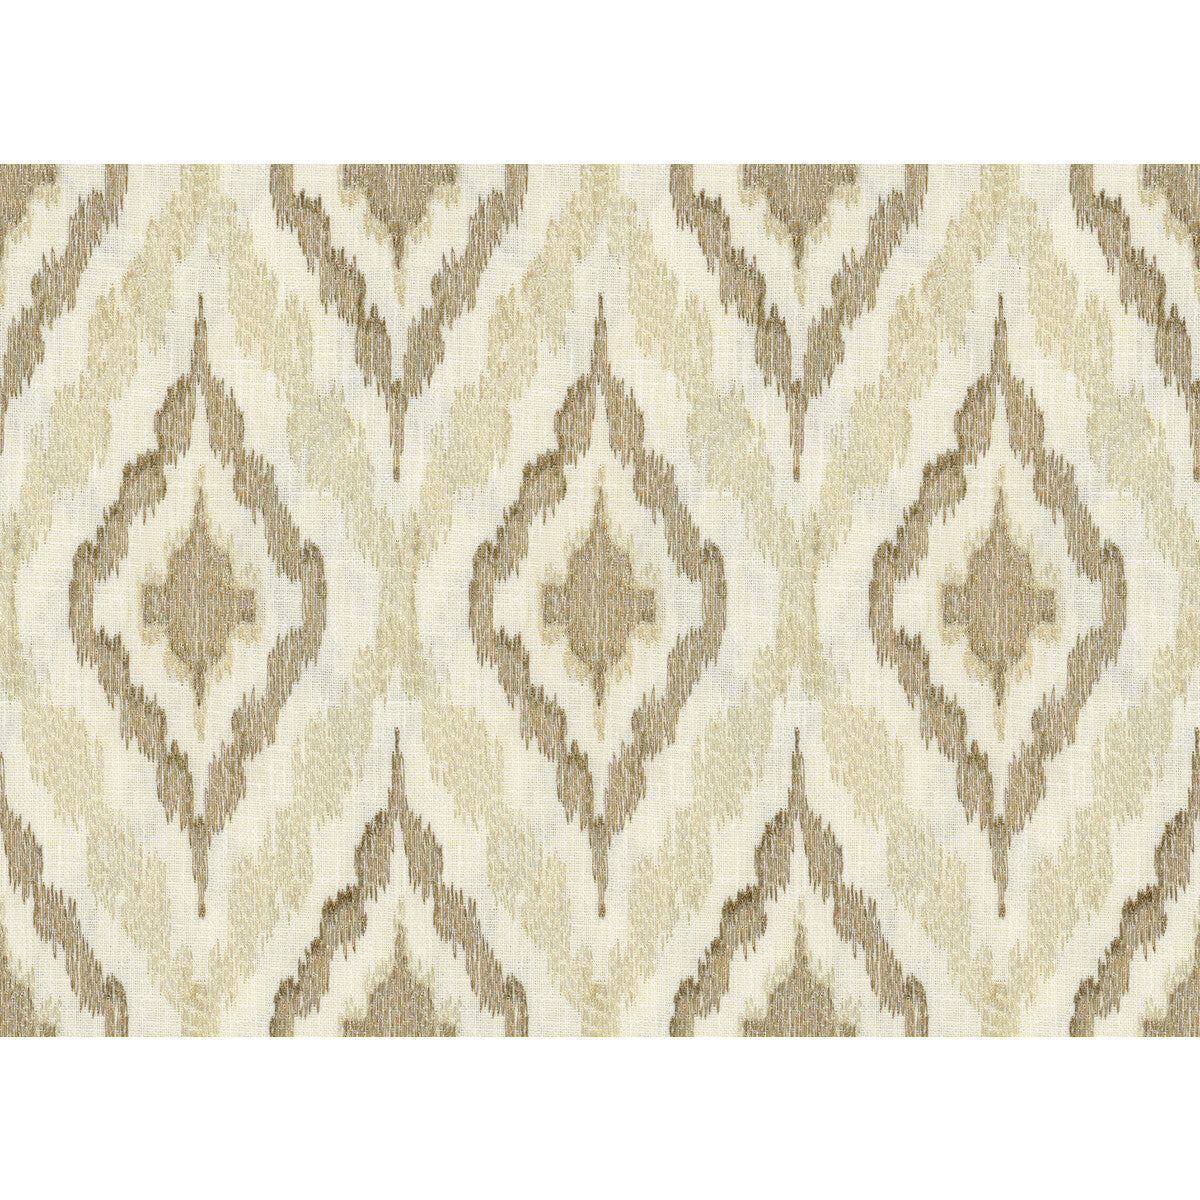 Kravet Design fabric in 34539-16 color - pattern 34539.16.0 - by Kravet Design